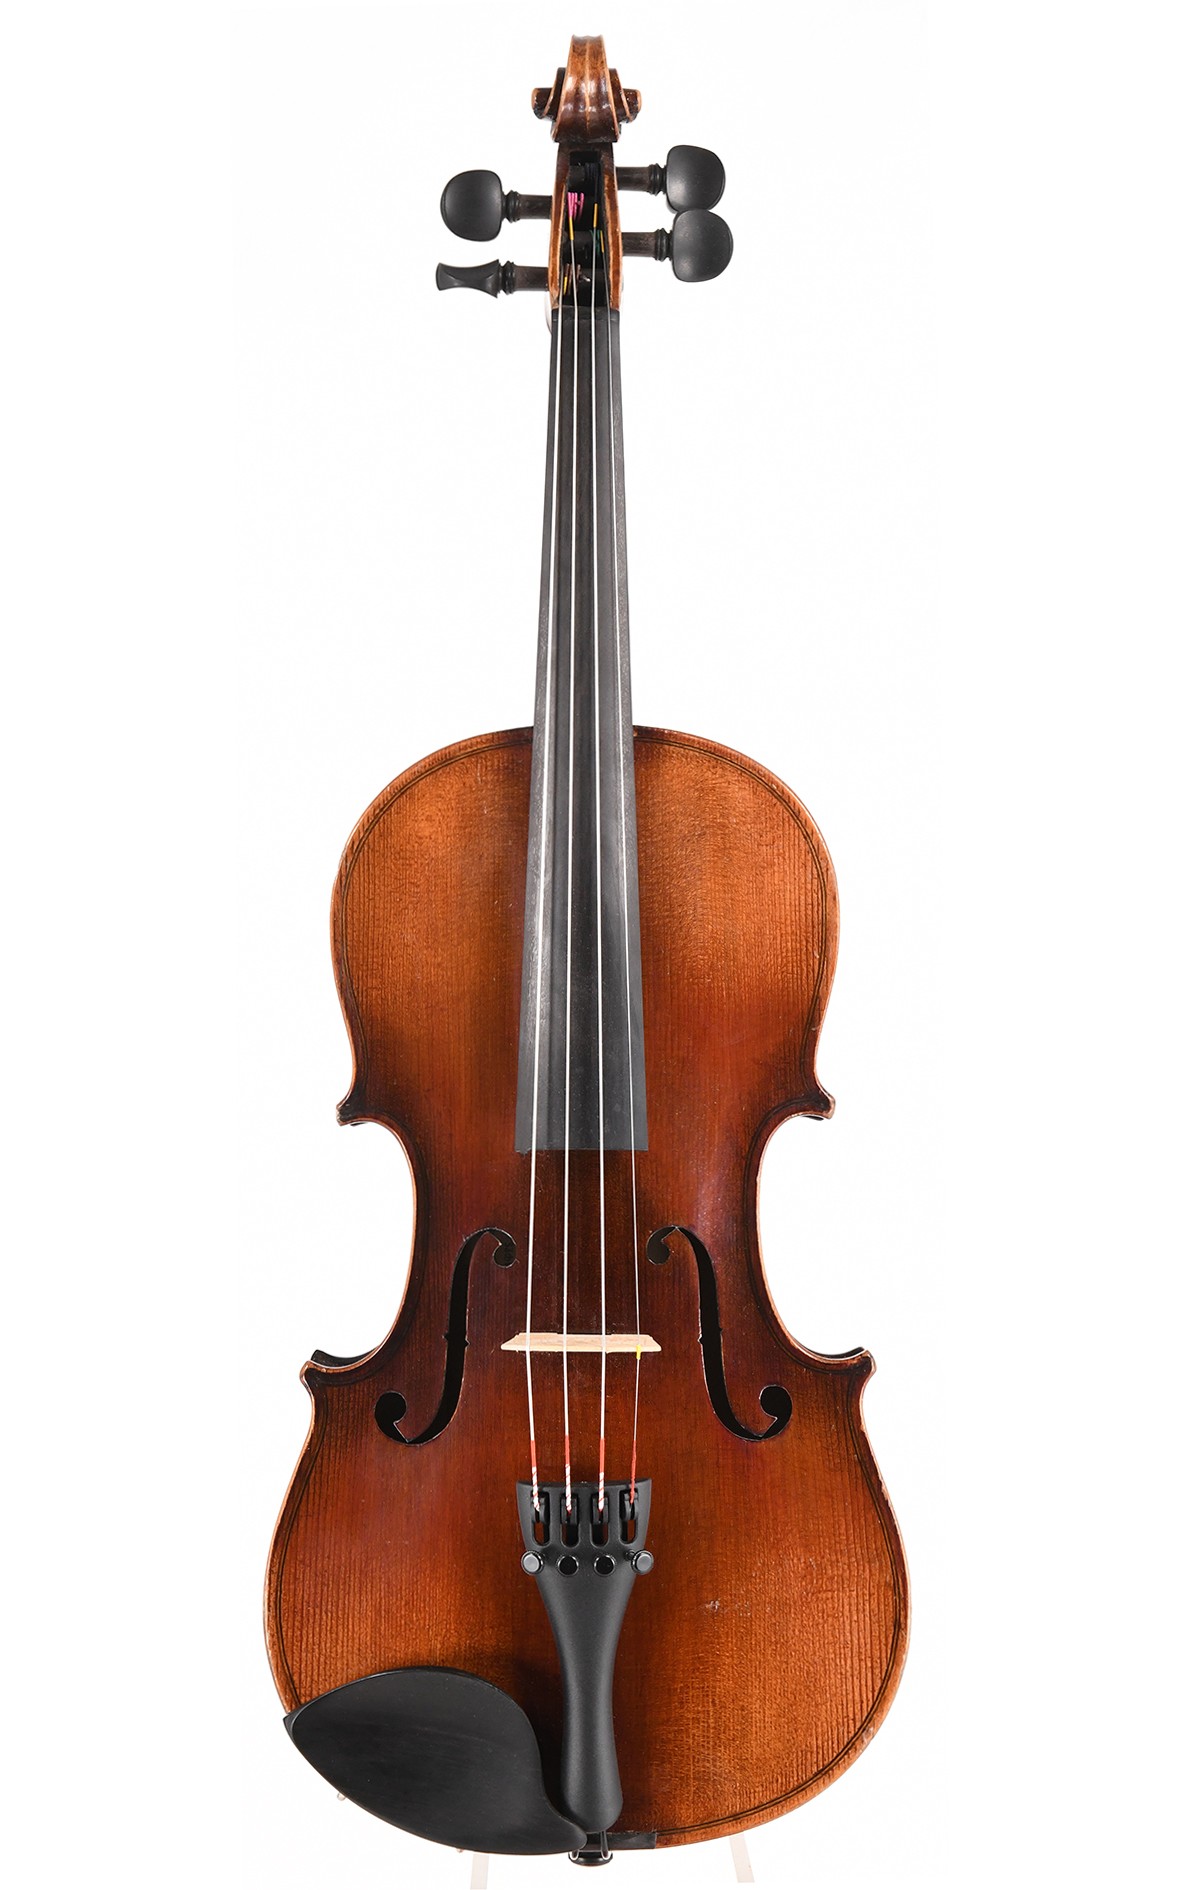 3/4 violin by Schuster & Co., Markneukirchen